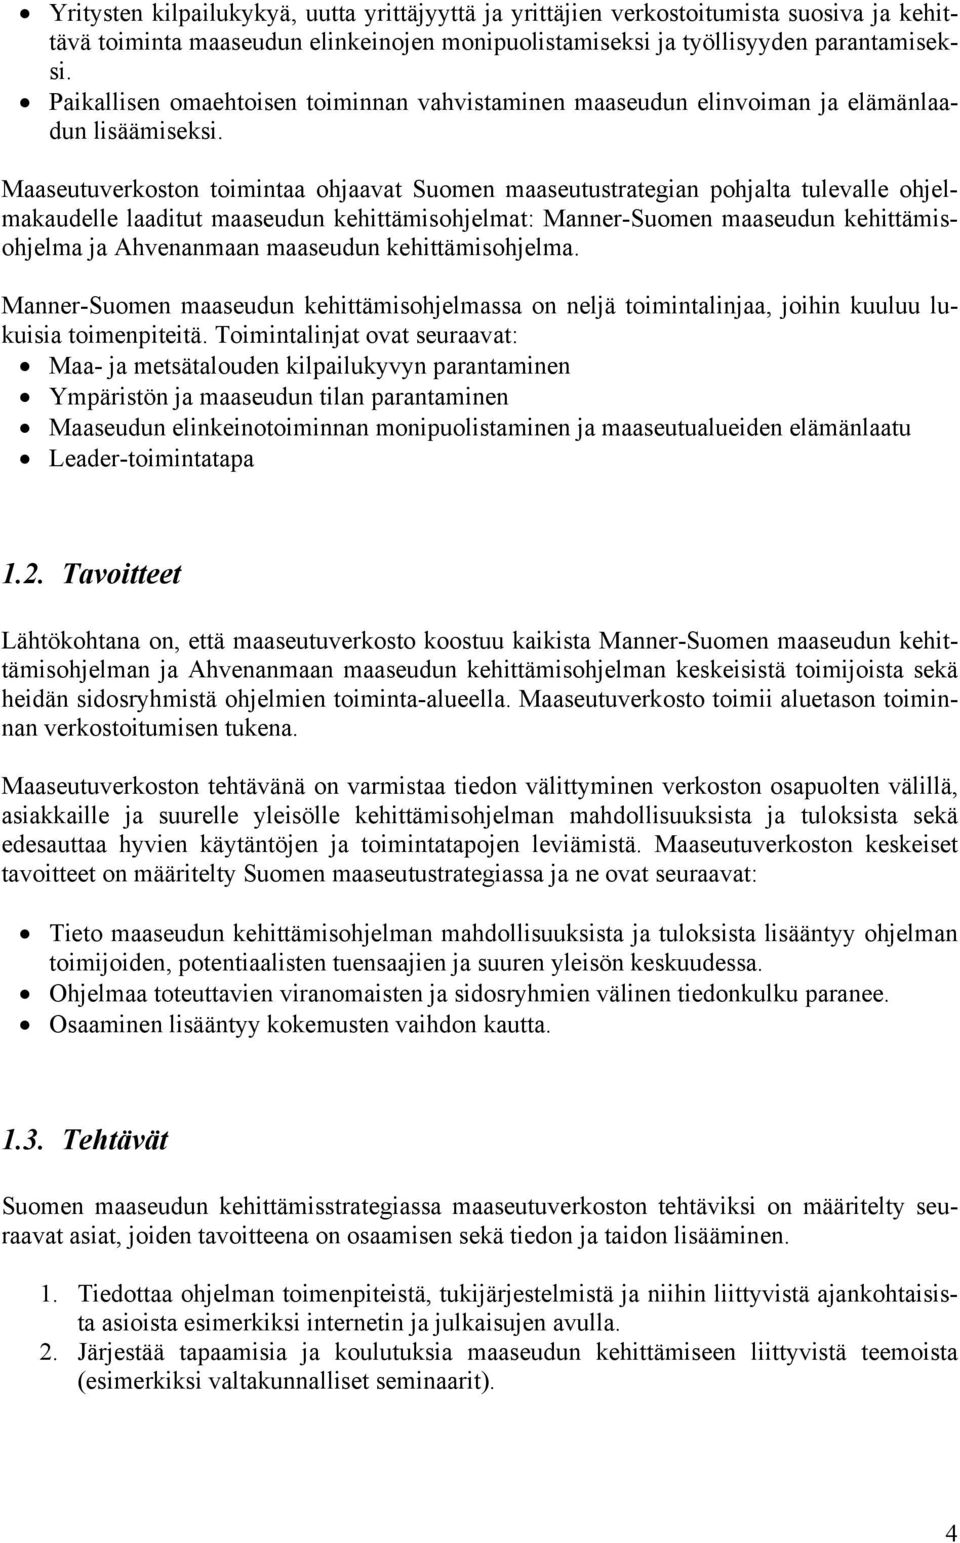 Maaseutuverkoston toimintaa ohjaavat Suomen maaseutustrategian pohjalta tulevalle ohjelmakaudelle laaditut maaseudun kehittämisohjelmat: Manner-Suomen maaseudun kehittämisohjelma ja Ahvenanmaan